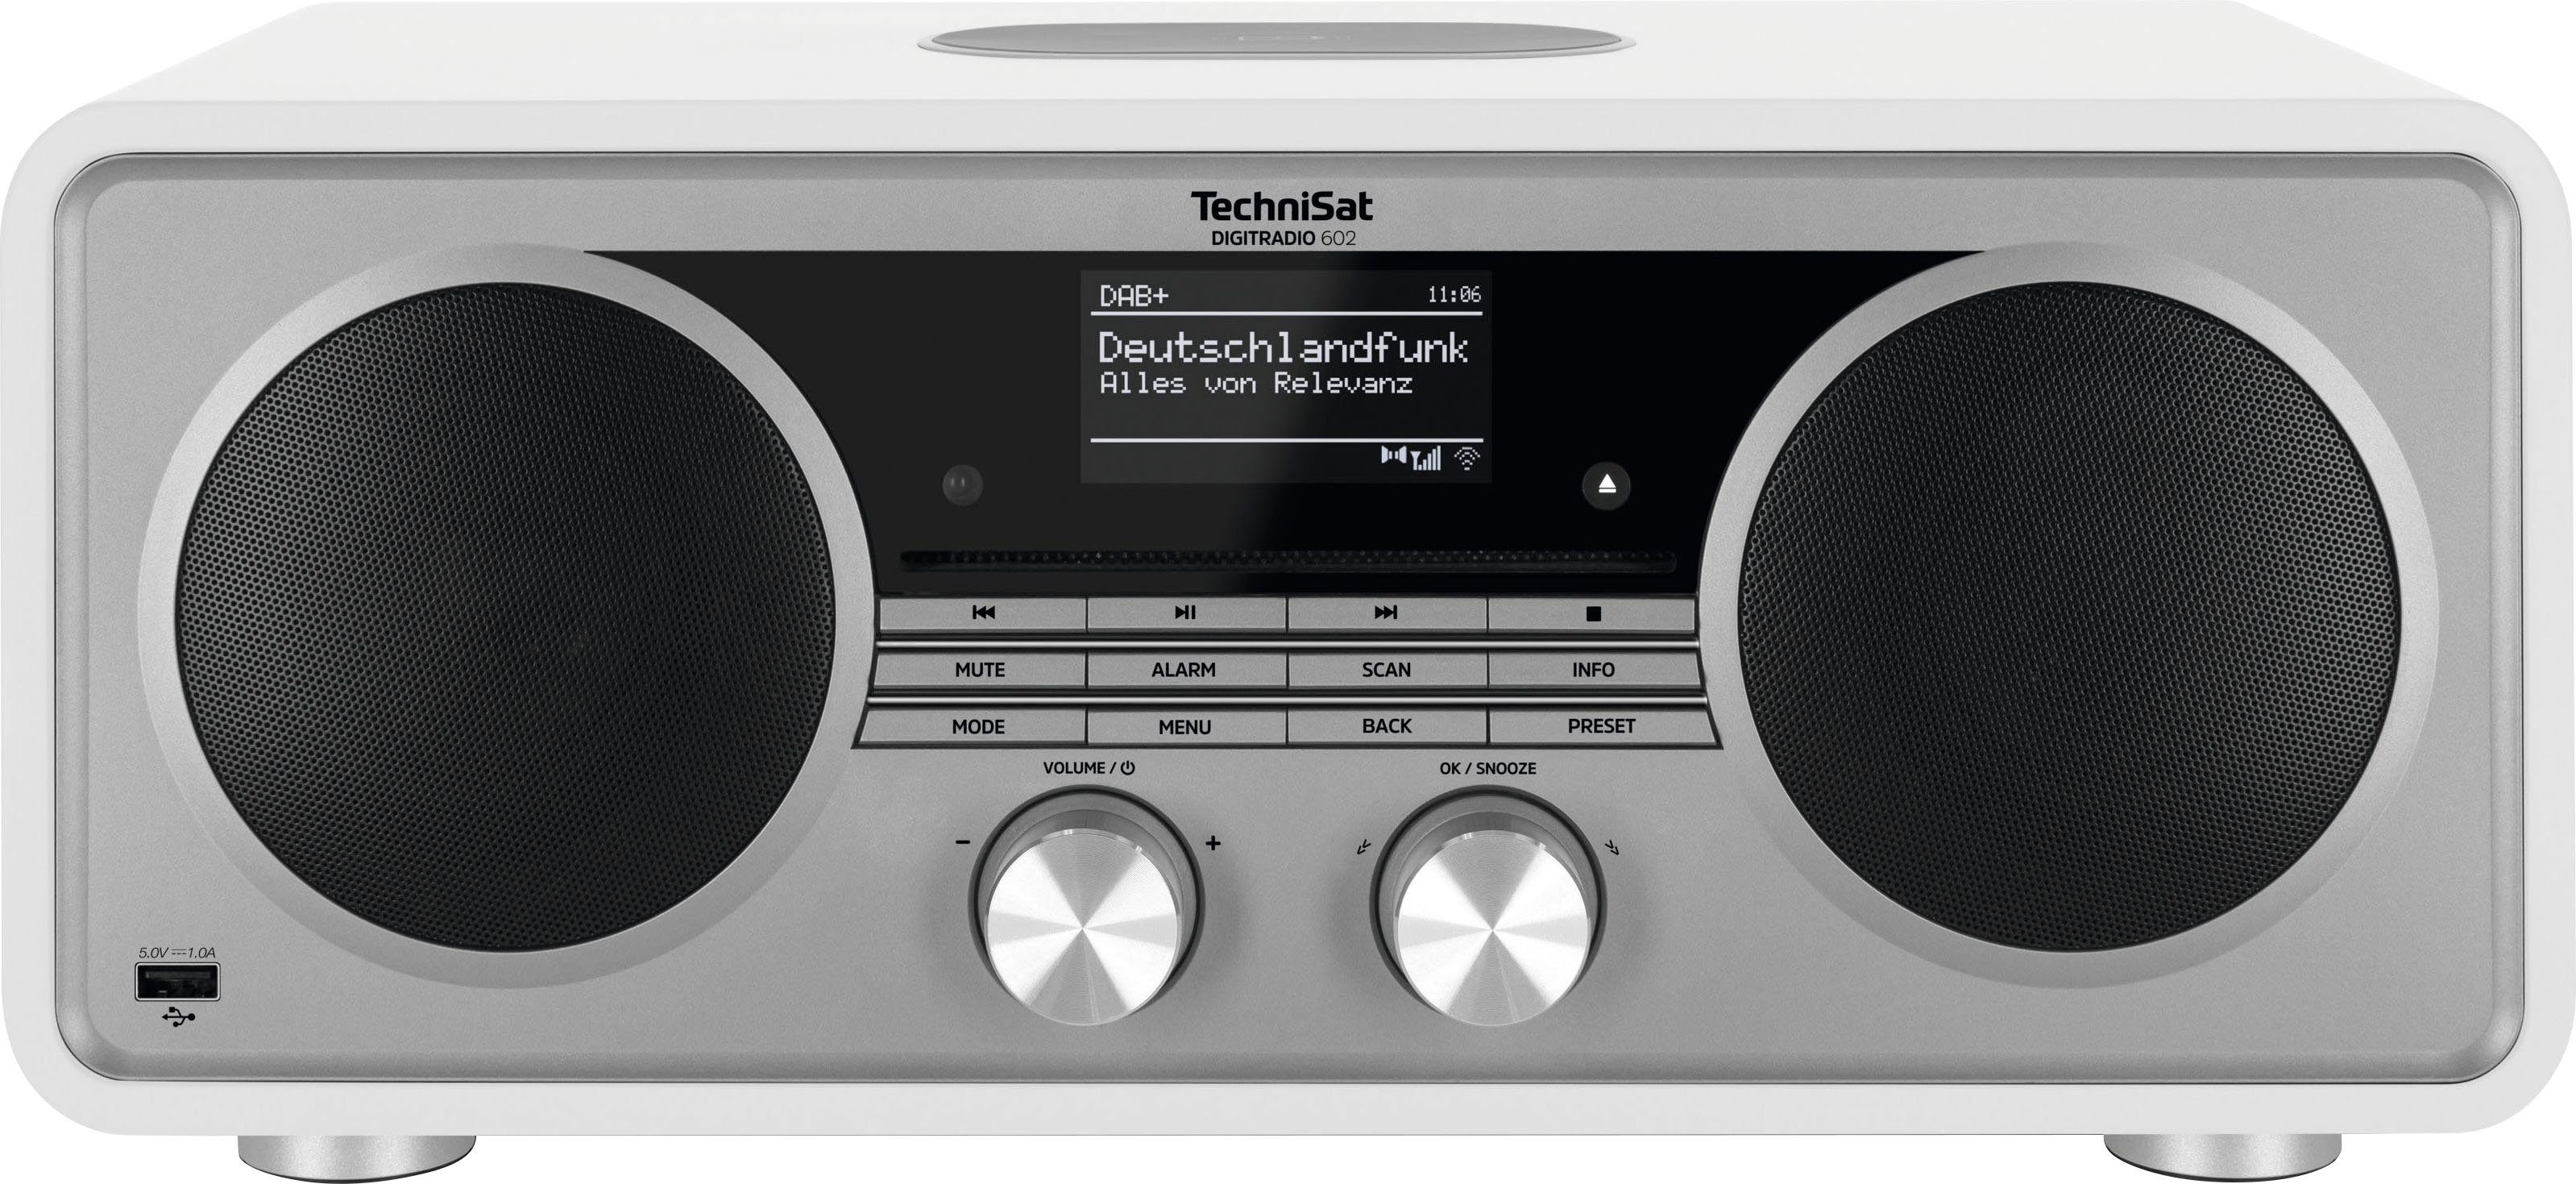 Internet-Radio UKW RDS, W, mit (DAB), CD-Player) Weiß/Silber TechniSat (Digitalradio Stereoanlage, DIGITRADIO 602 70